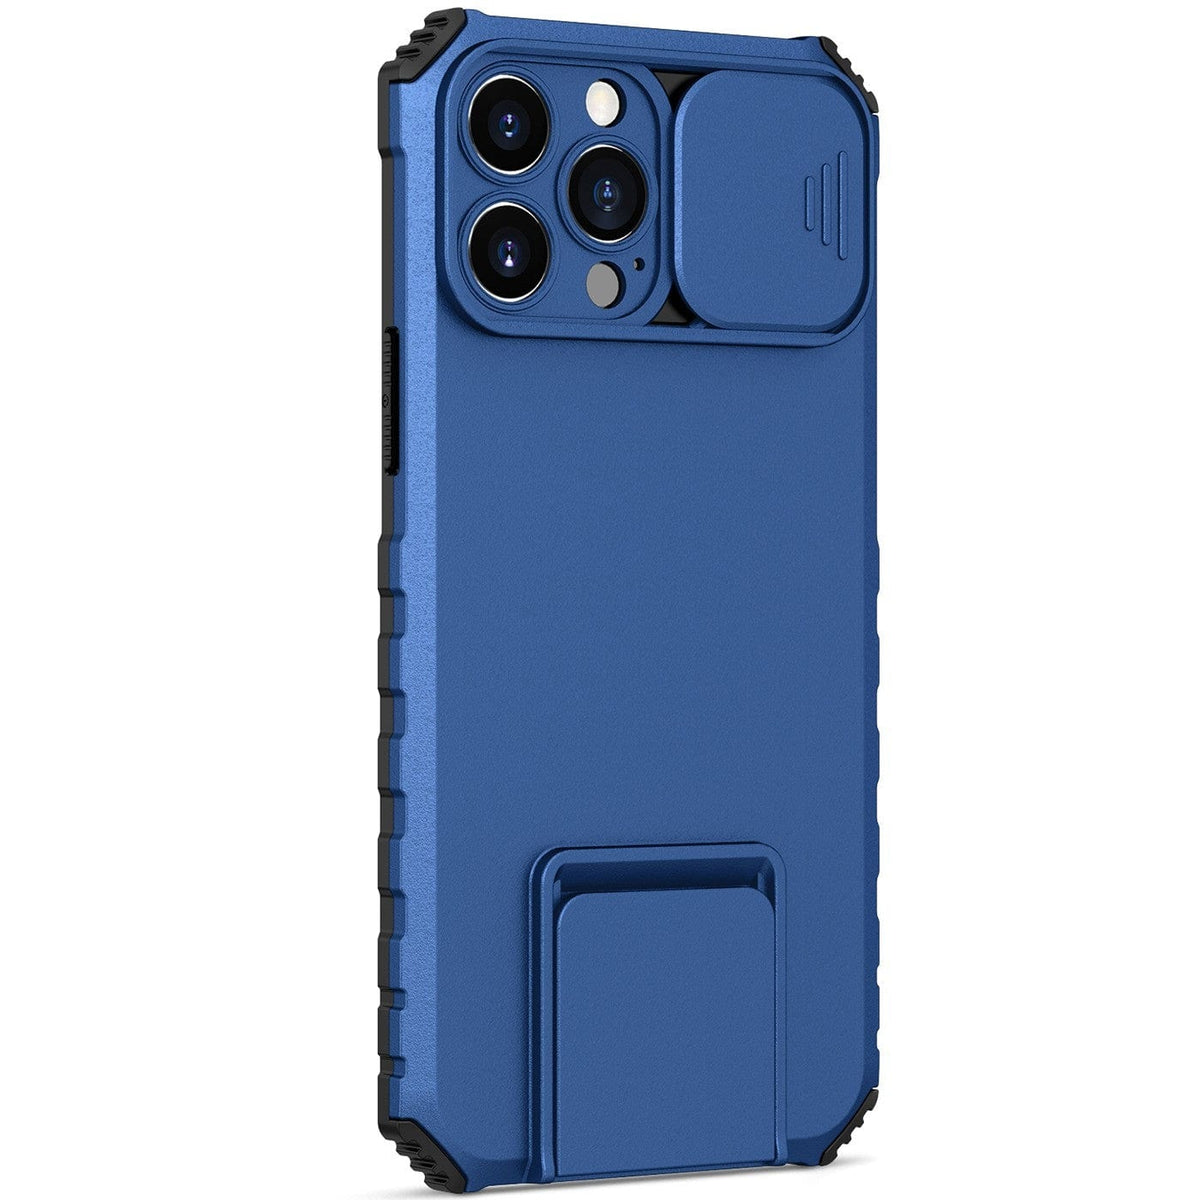 Husa Defender cu Stand pentru iPhone 11 Pro, Albastru, Suport reglabil, Antisoc, Protectie glisanta pentru camera